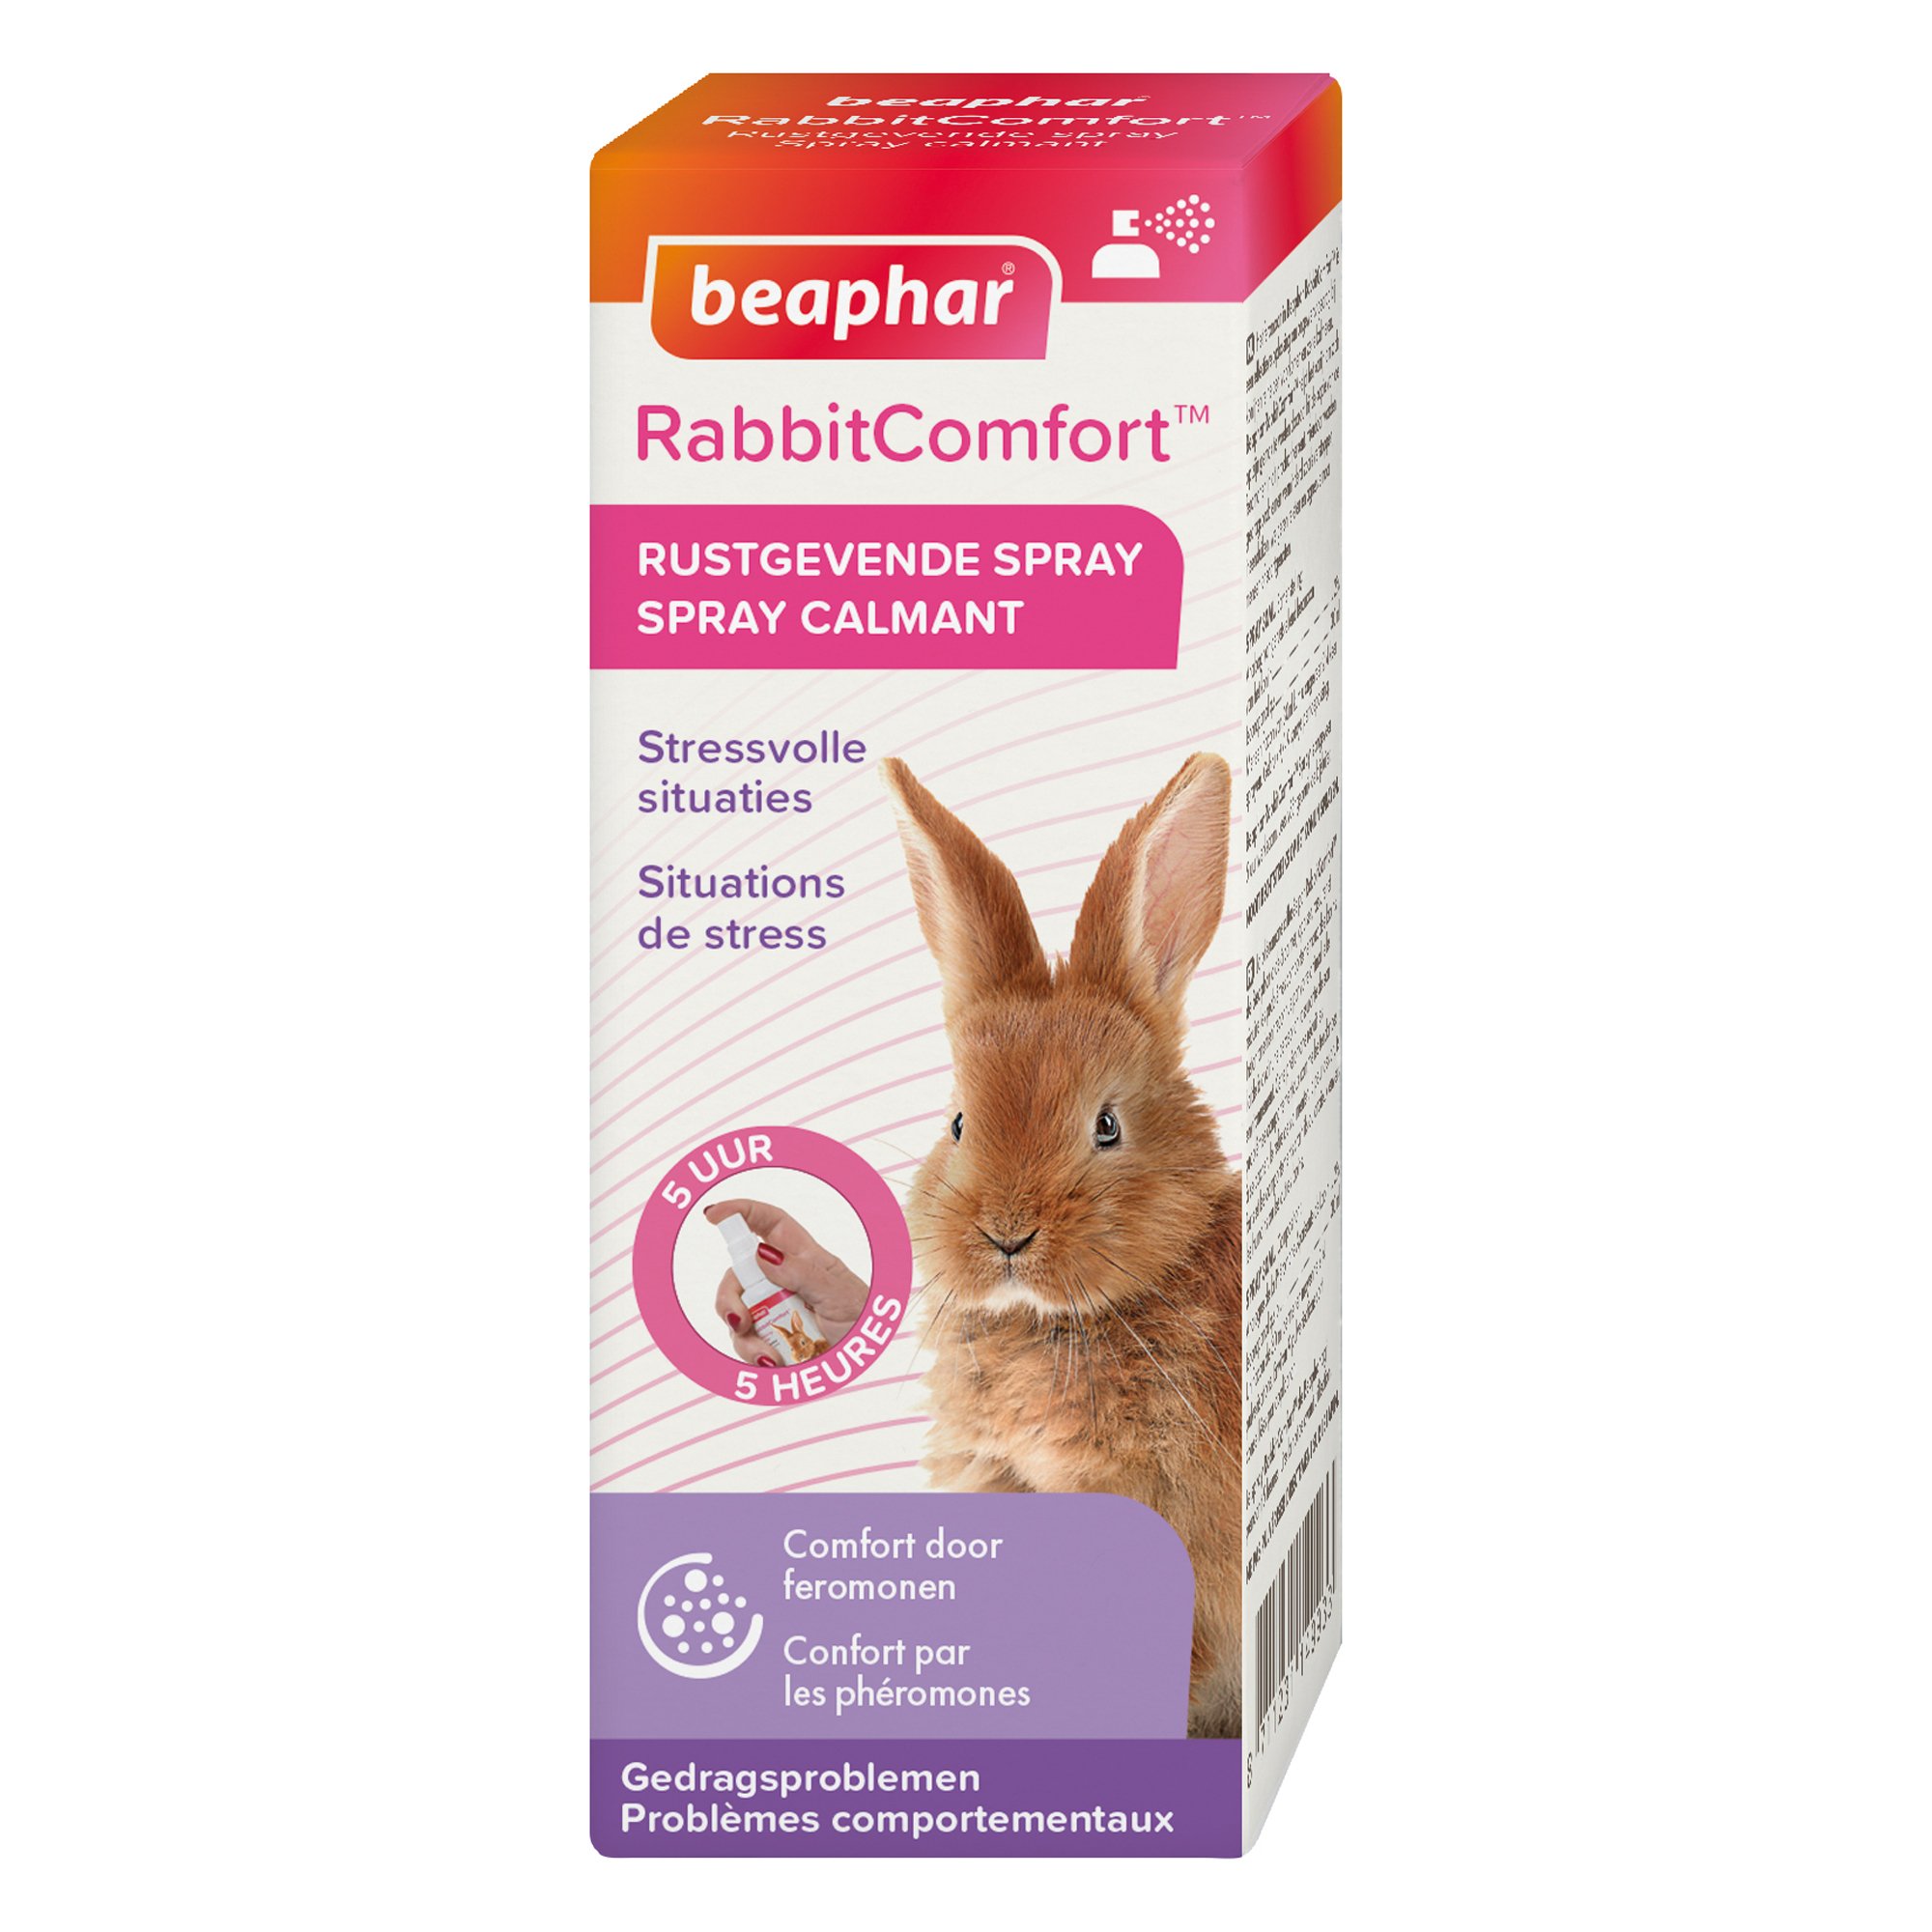 RABBITCOMFORT Spray calmante con feromonas para conejos y crías